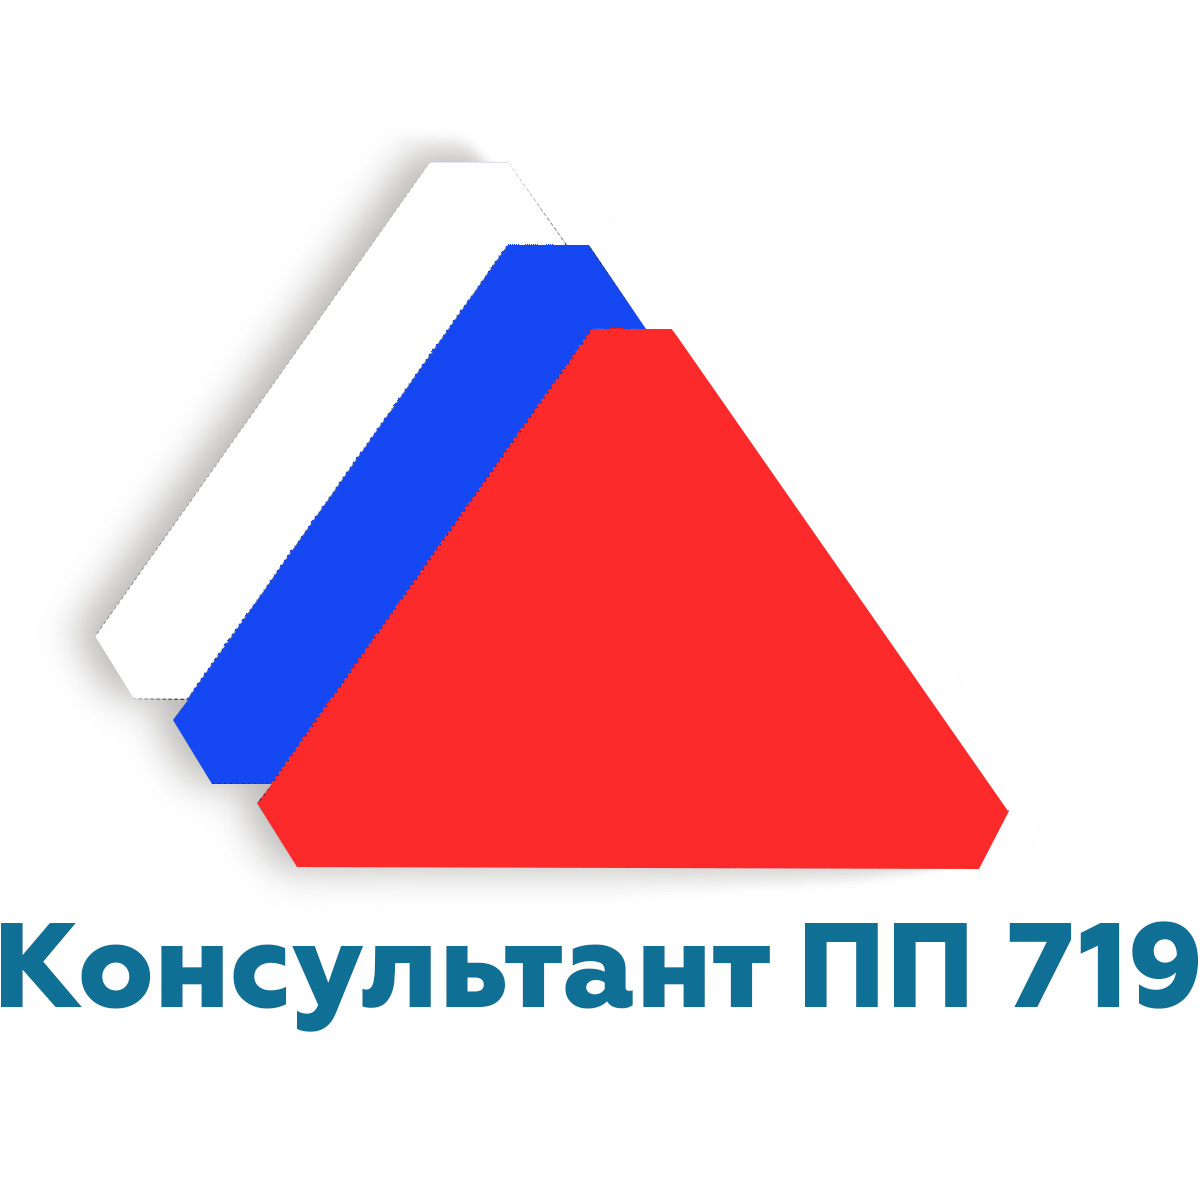 Логотип внесение в реестр ГИСП Минпромторга пп 719